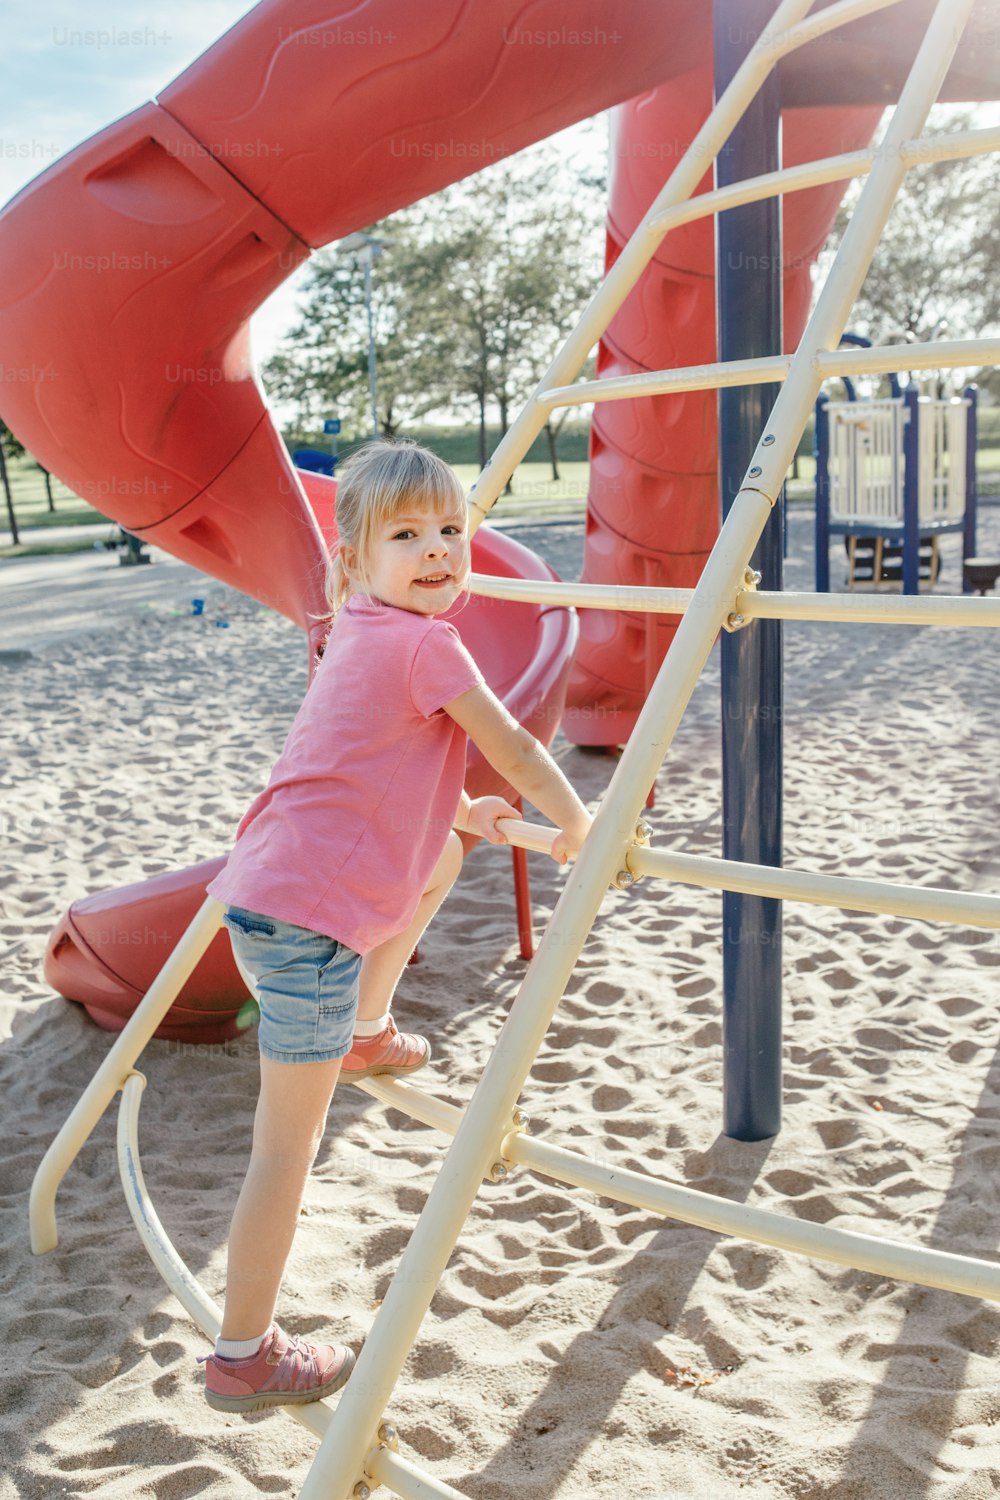 Attiva felice coraggiosa ragazza caucasica bambino che sale scalascale arrampicatore sul cortile della scuola del parco giochi all'aperto in una giornata di sole estiva. Attività stagionale per bambini all'aperto. Autentico concetto di stile di vita infantile.